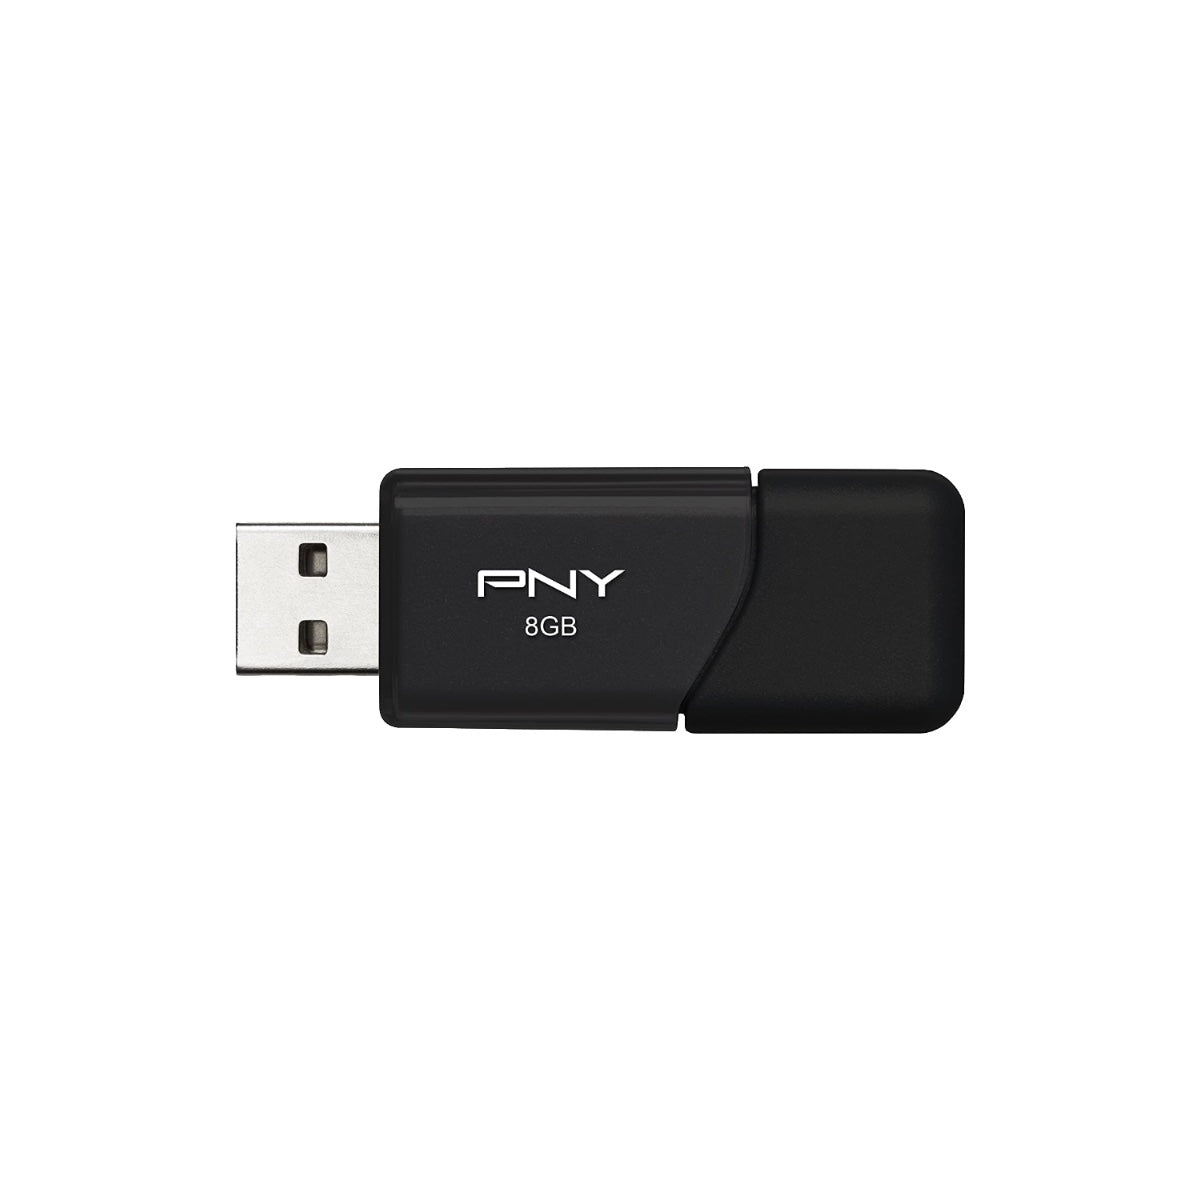 PNY 8GB USB 2.0 Flash Drive